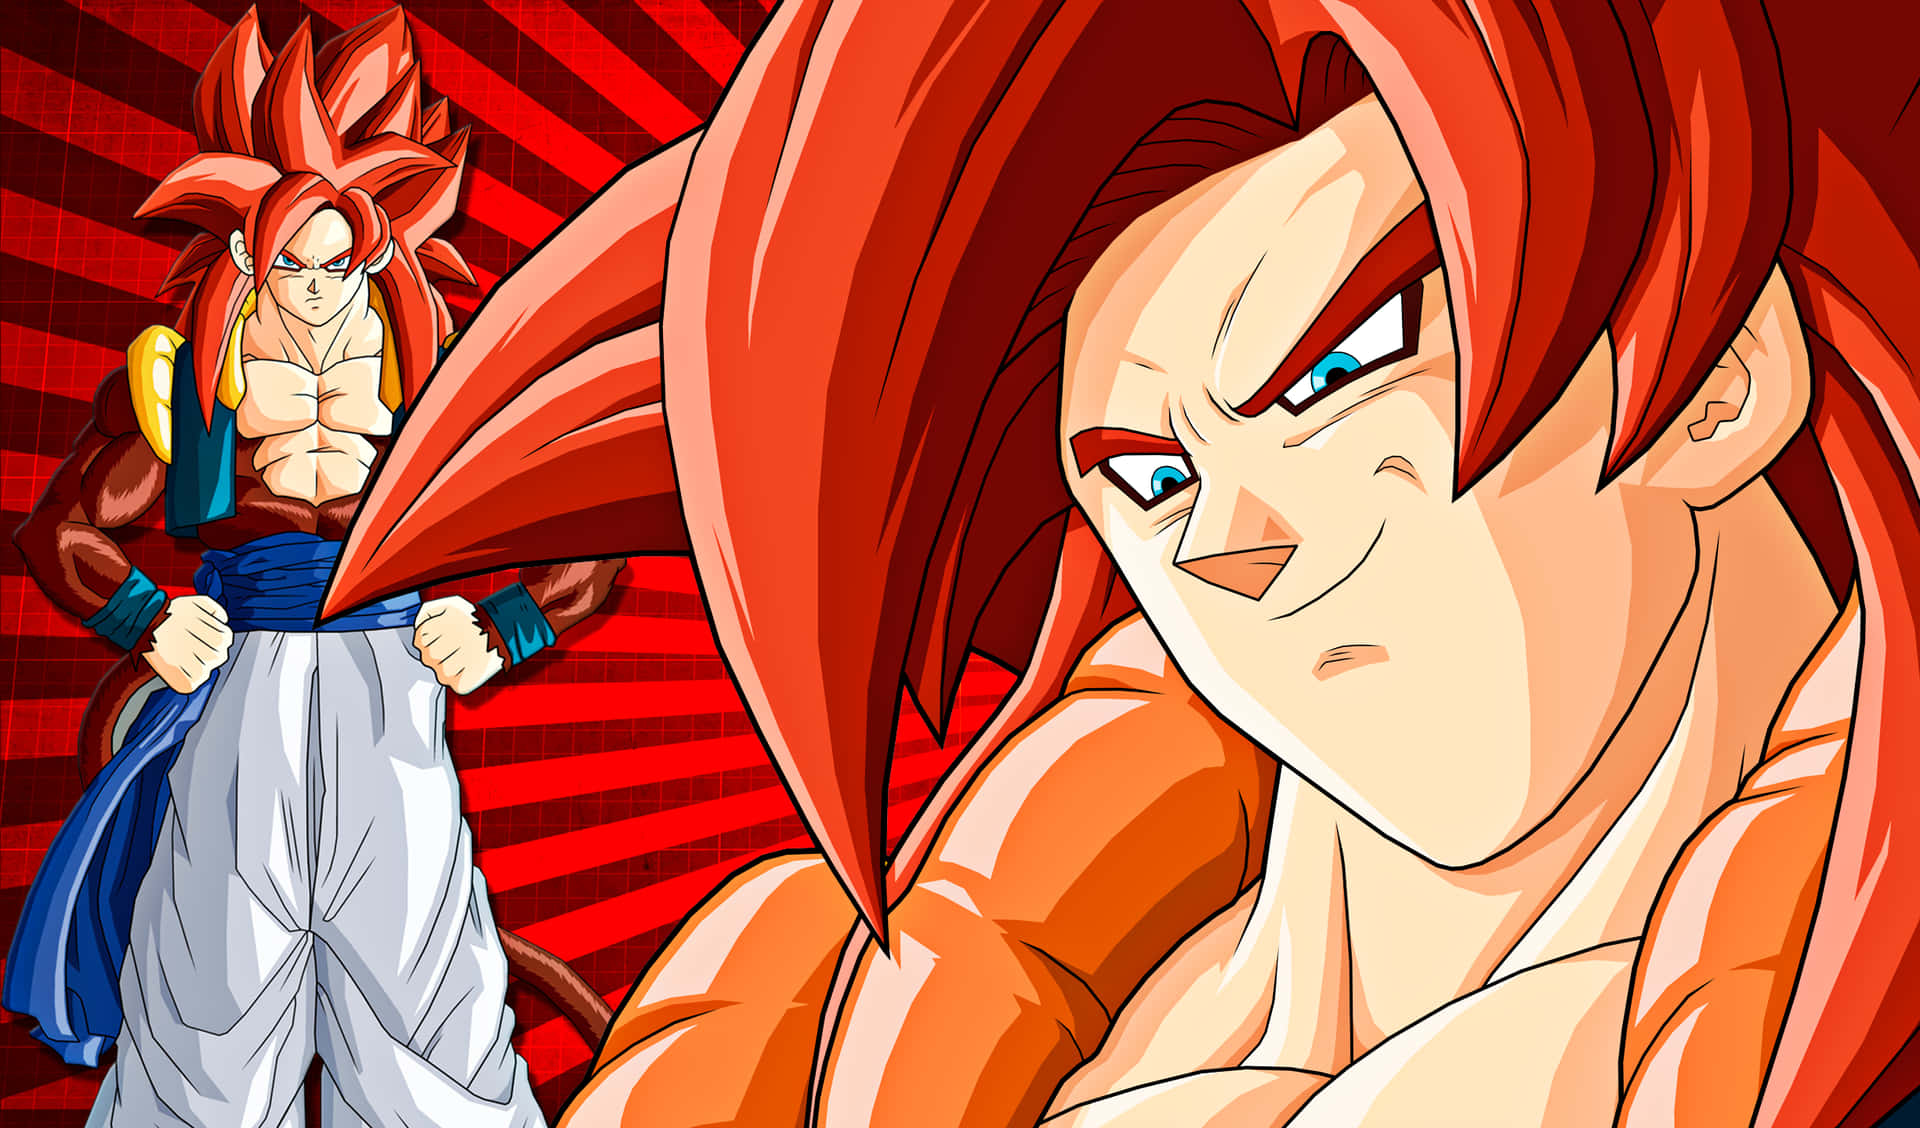 Goku powering up in super saiyan 4 form